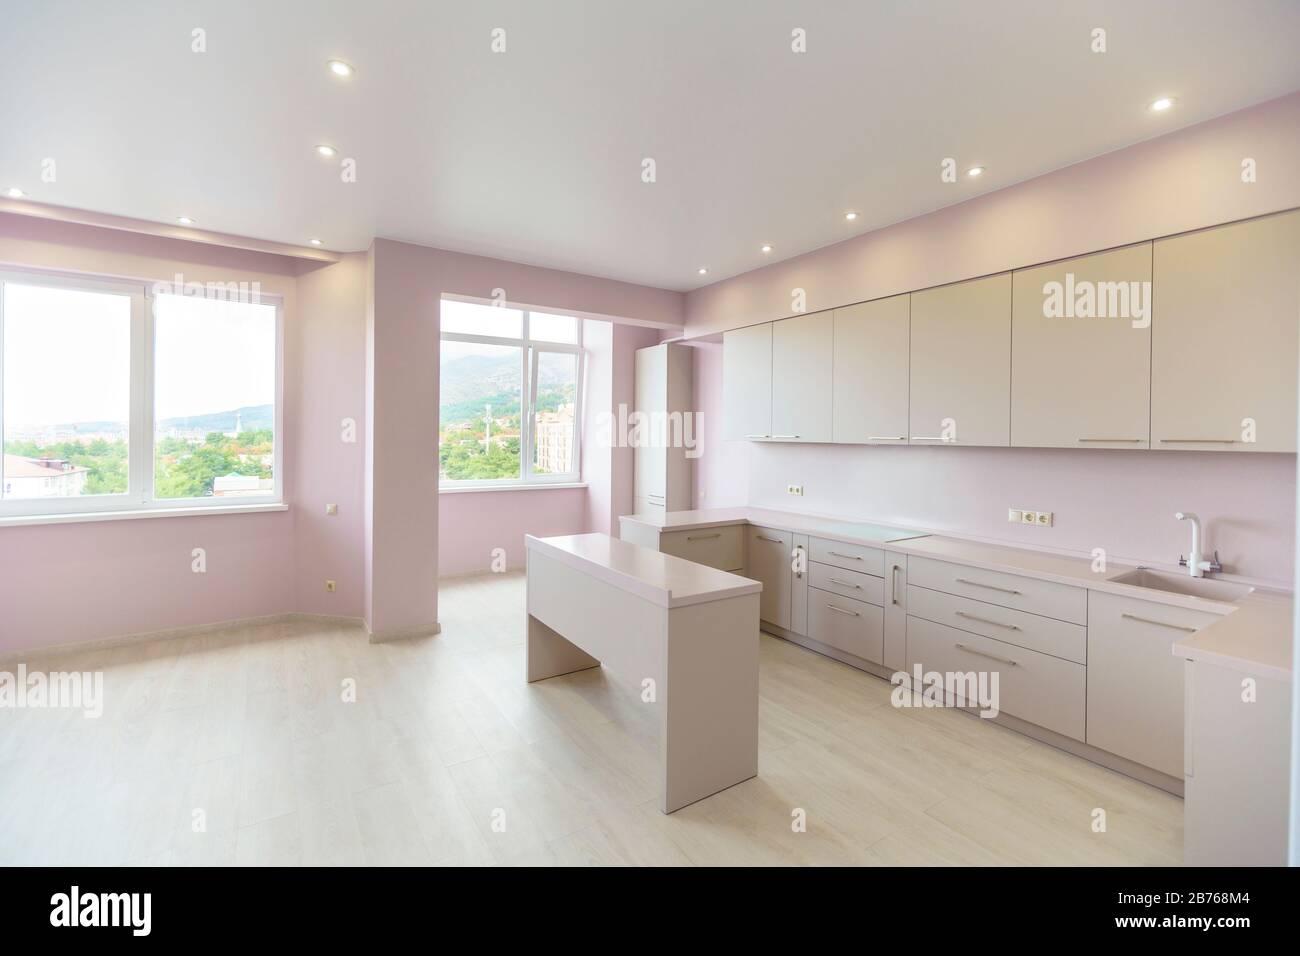 Une grande chambre avec des murs roses et un ensemble de cuisine blanche. Le mobilier de cuisine est neuf avec tous les appareils de cuisine. Devant la cuisine se trouve une table blanche. Banque D'Images